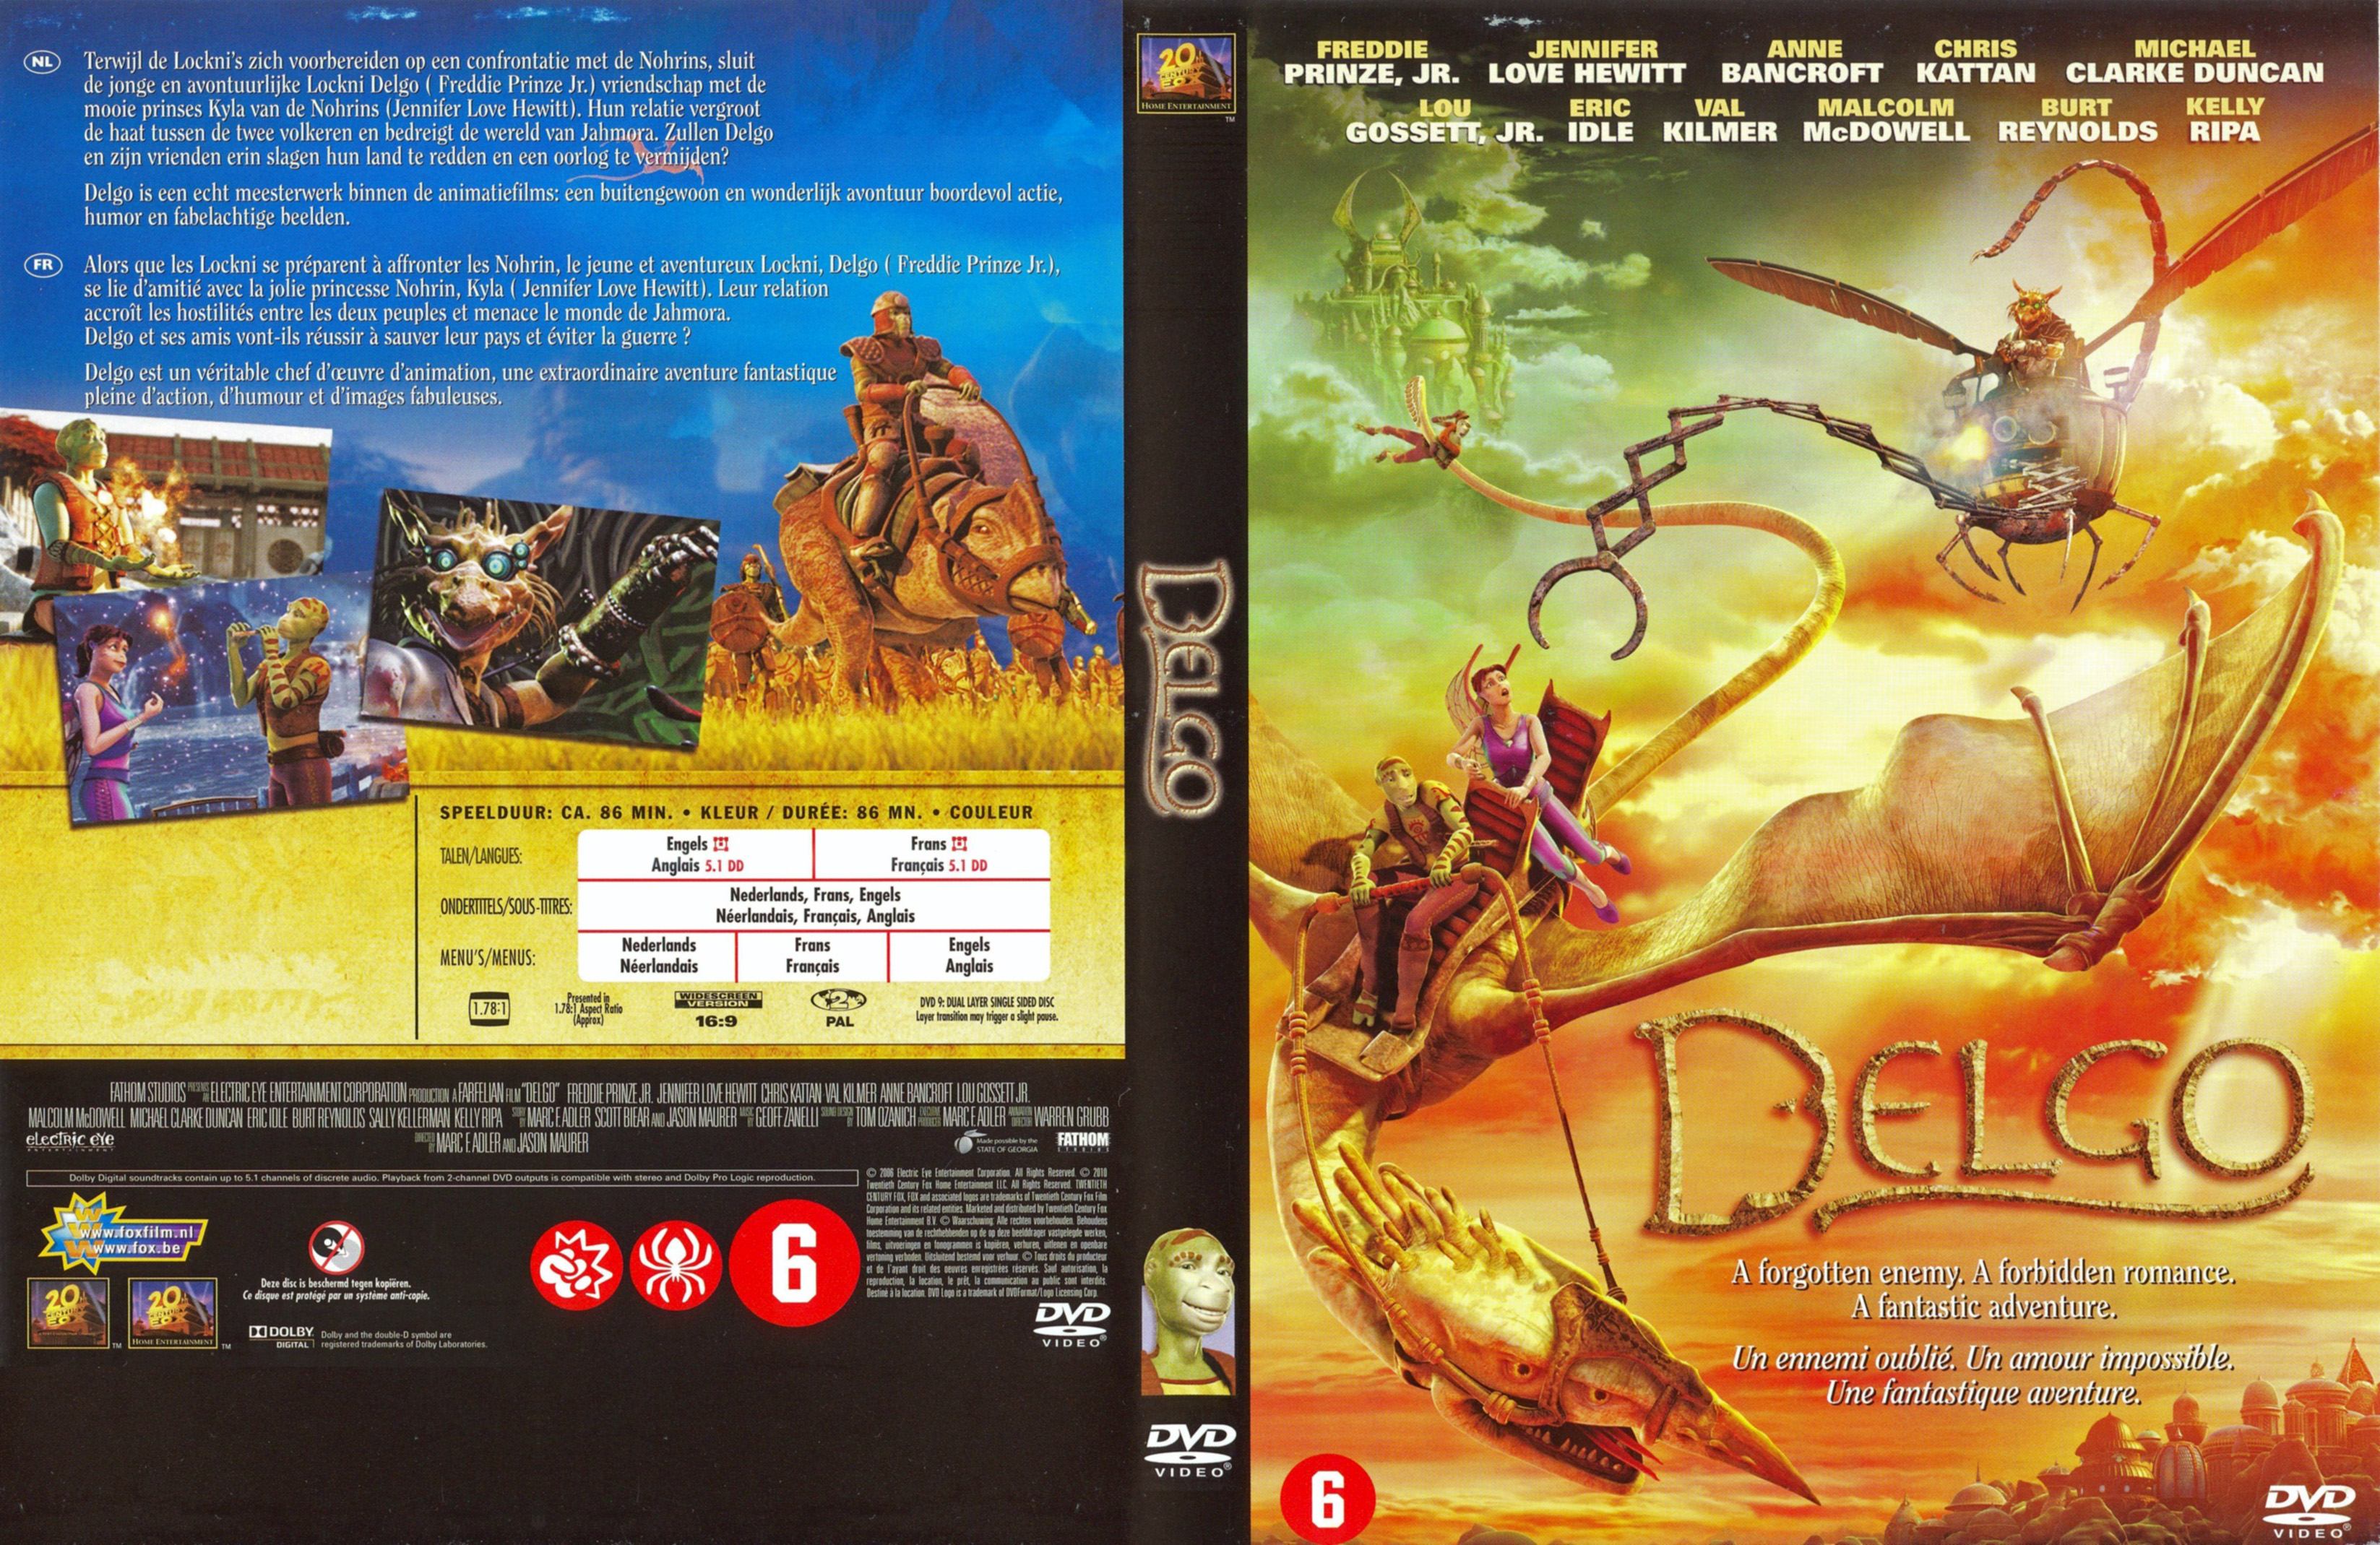 Jaquette DVD Delgo